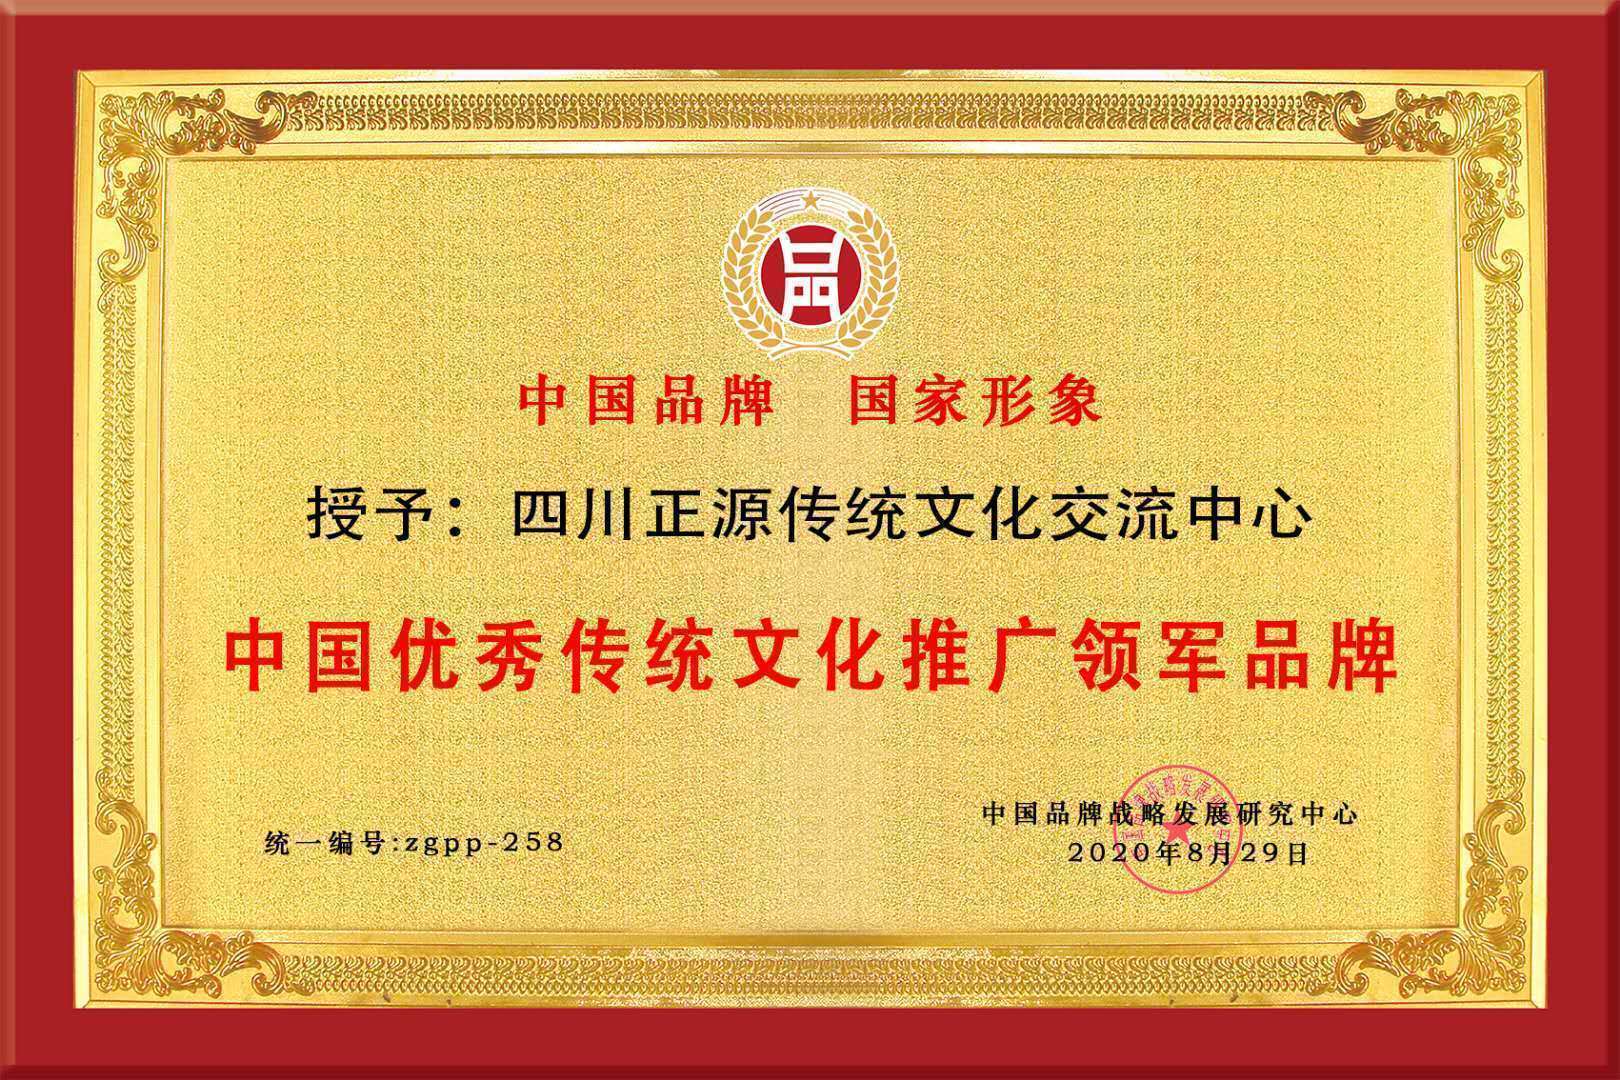 中国品牌战略发展研究中心授予四川正源文化交流中心"品牌荣誉